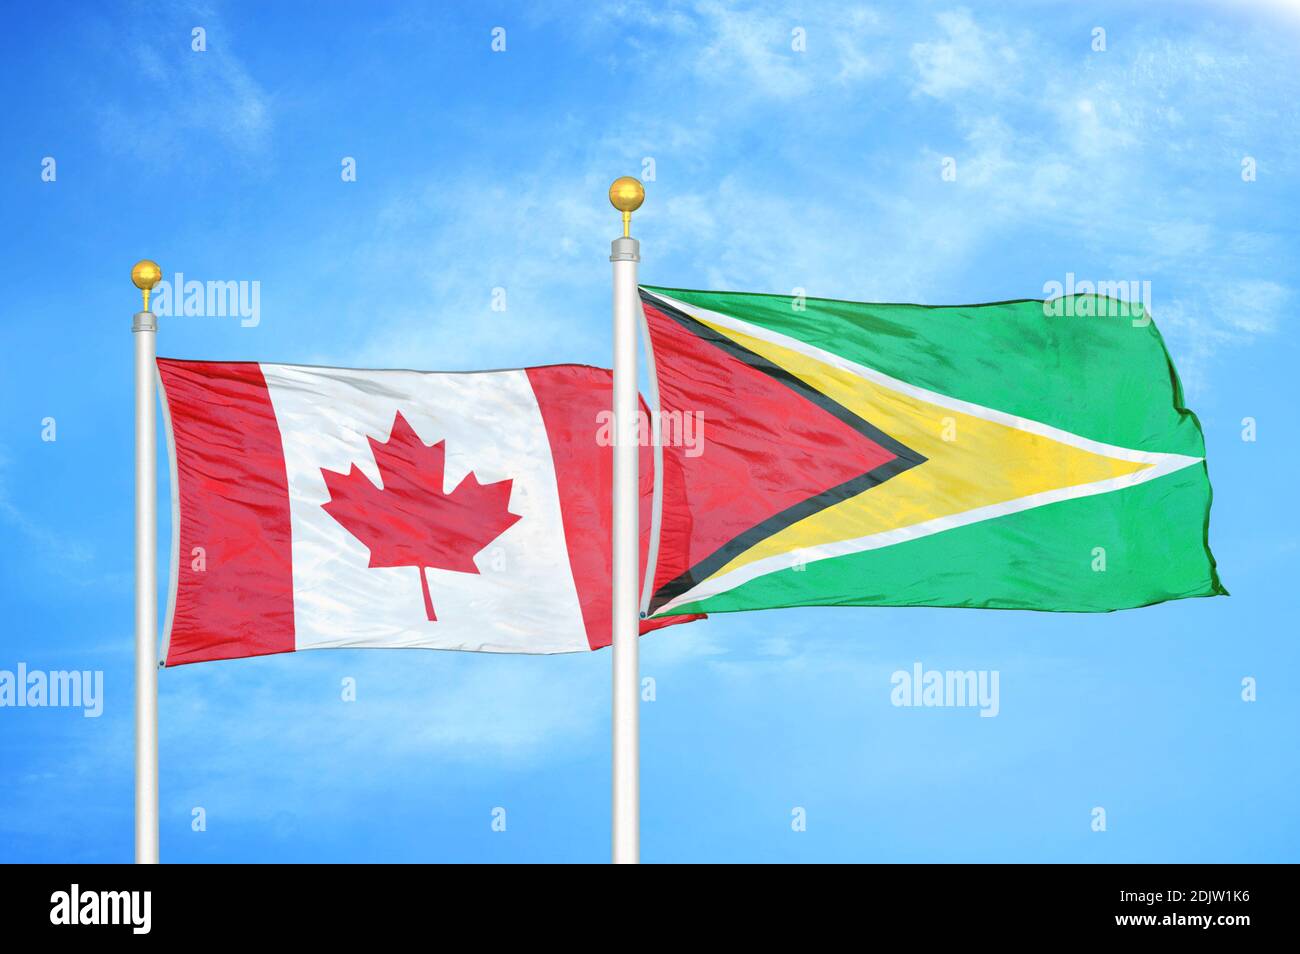 Kanada und Guyana zwei Flaggen auf Fahnenmasten und blau bewölkt Himmel Stockfoto